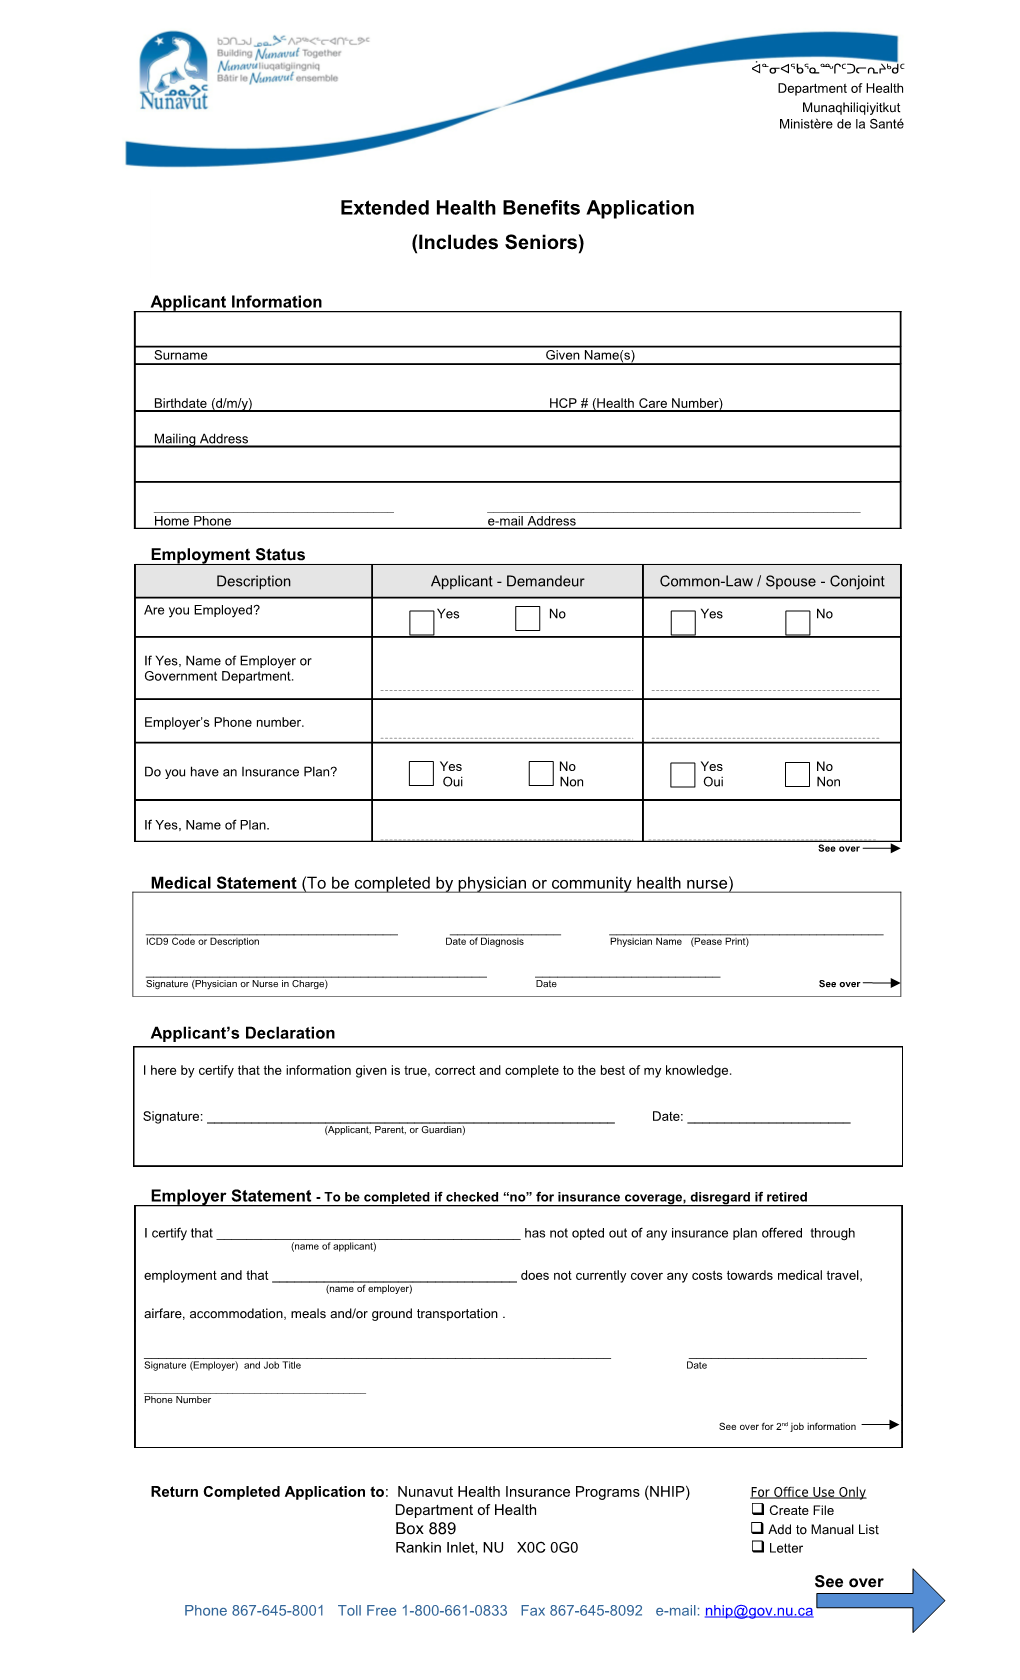 Applicant Information - Demandeur